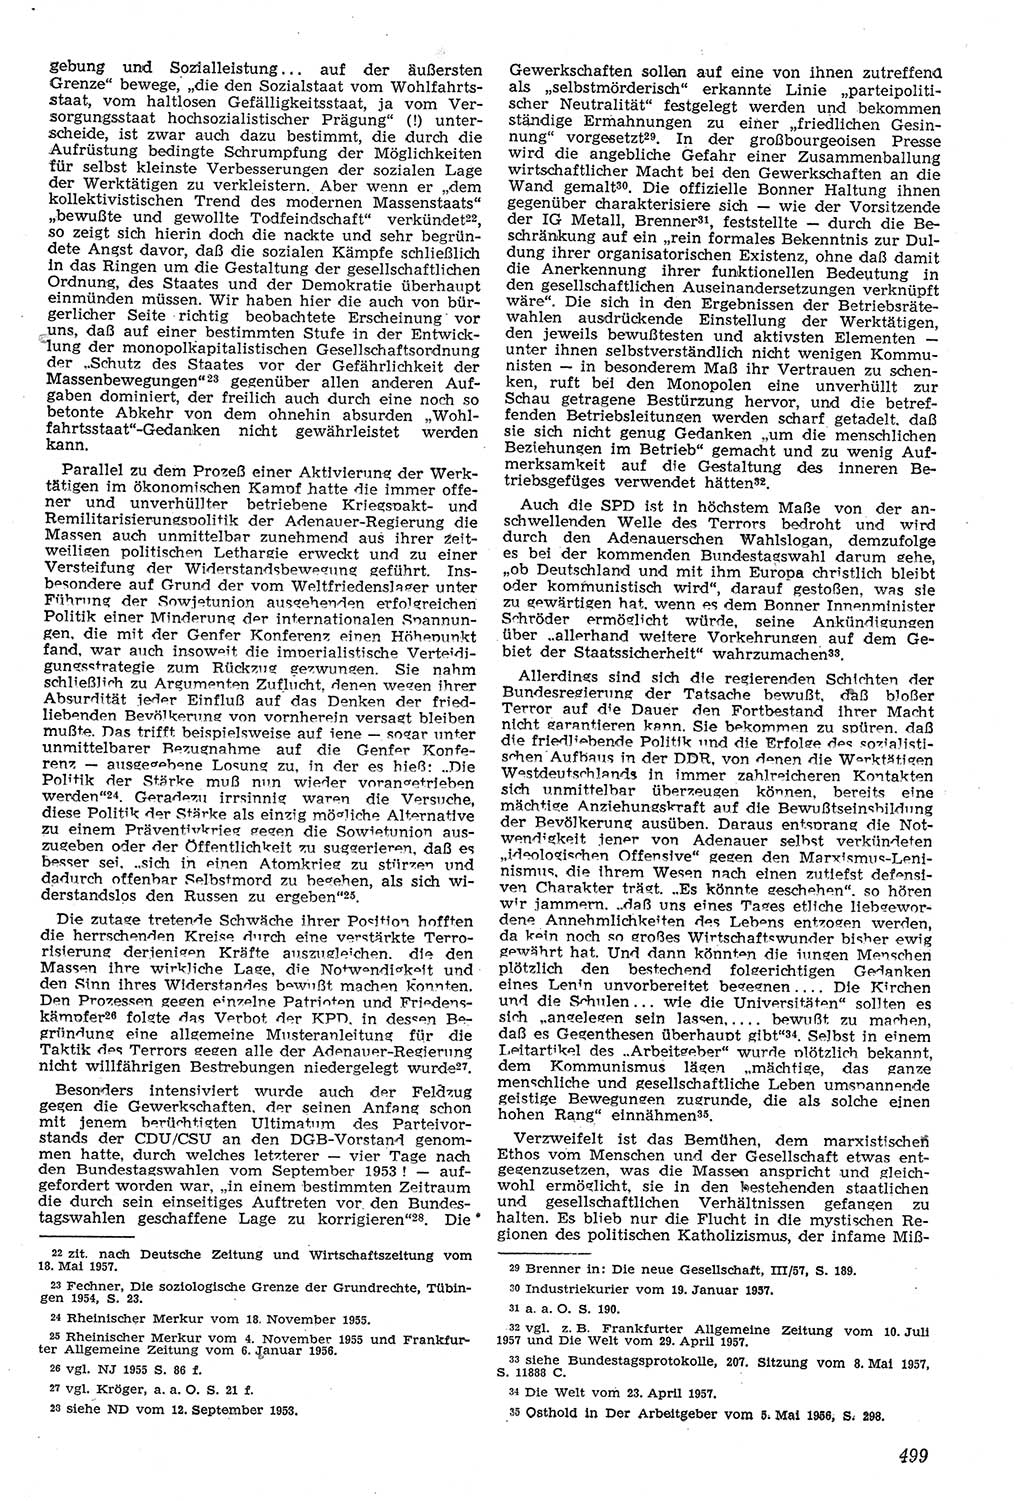 Neue Justiz (NJ), Zeitschrift für Recht und Rechtswissenschaft [Deutsche Demokratische Republik (DDR)], 11. Jahrgang 1957, Seite 499 (NJ DDR 1957, S. 499)